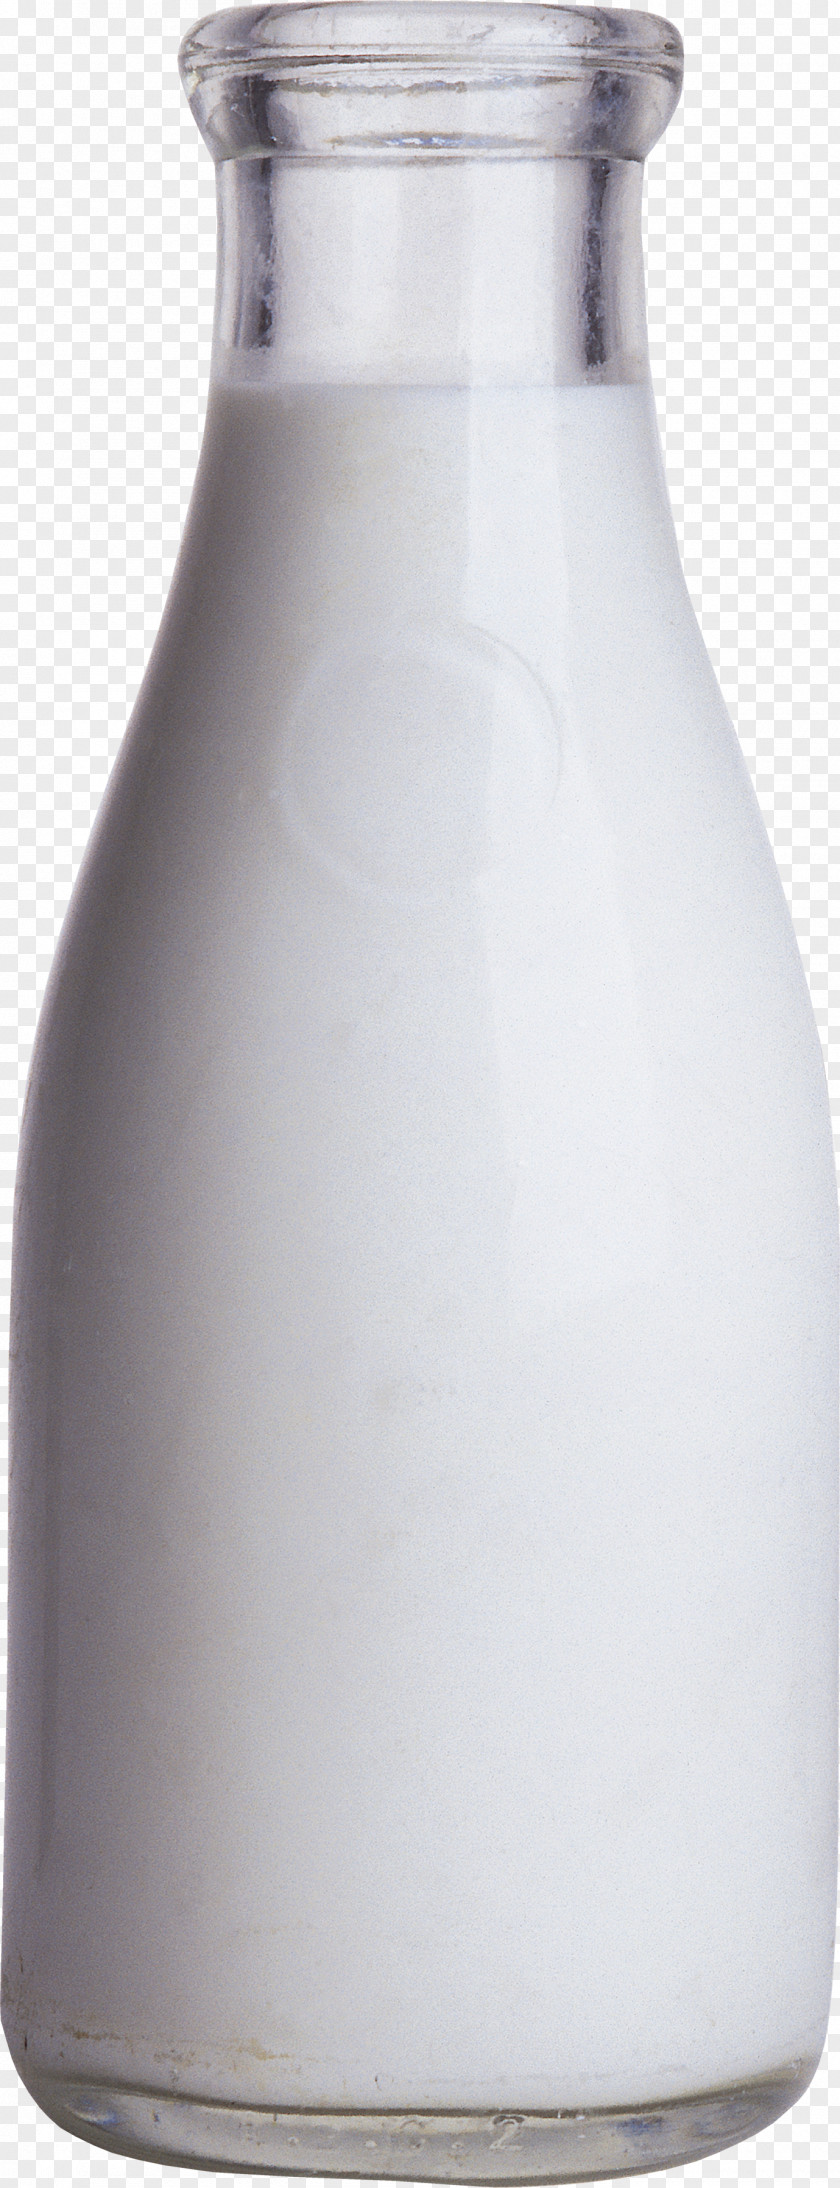 Milk Glass Bottle Square Jug PNG